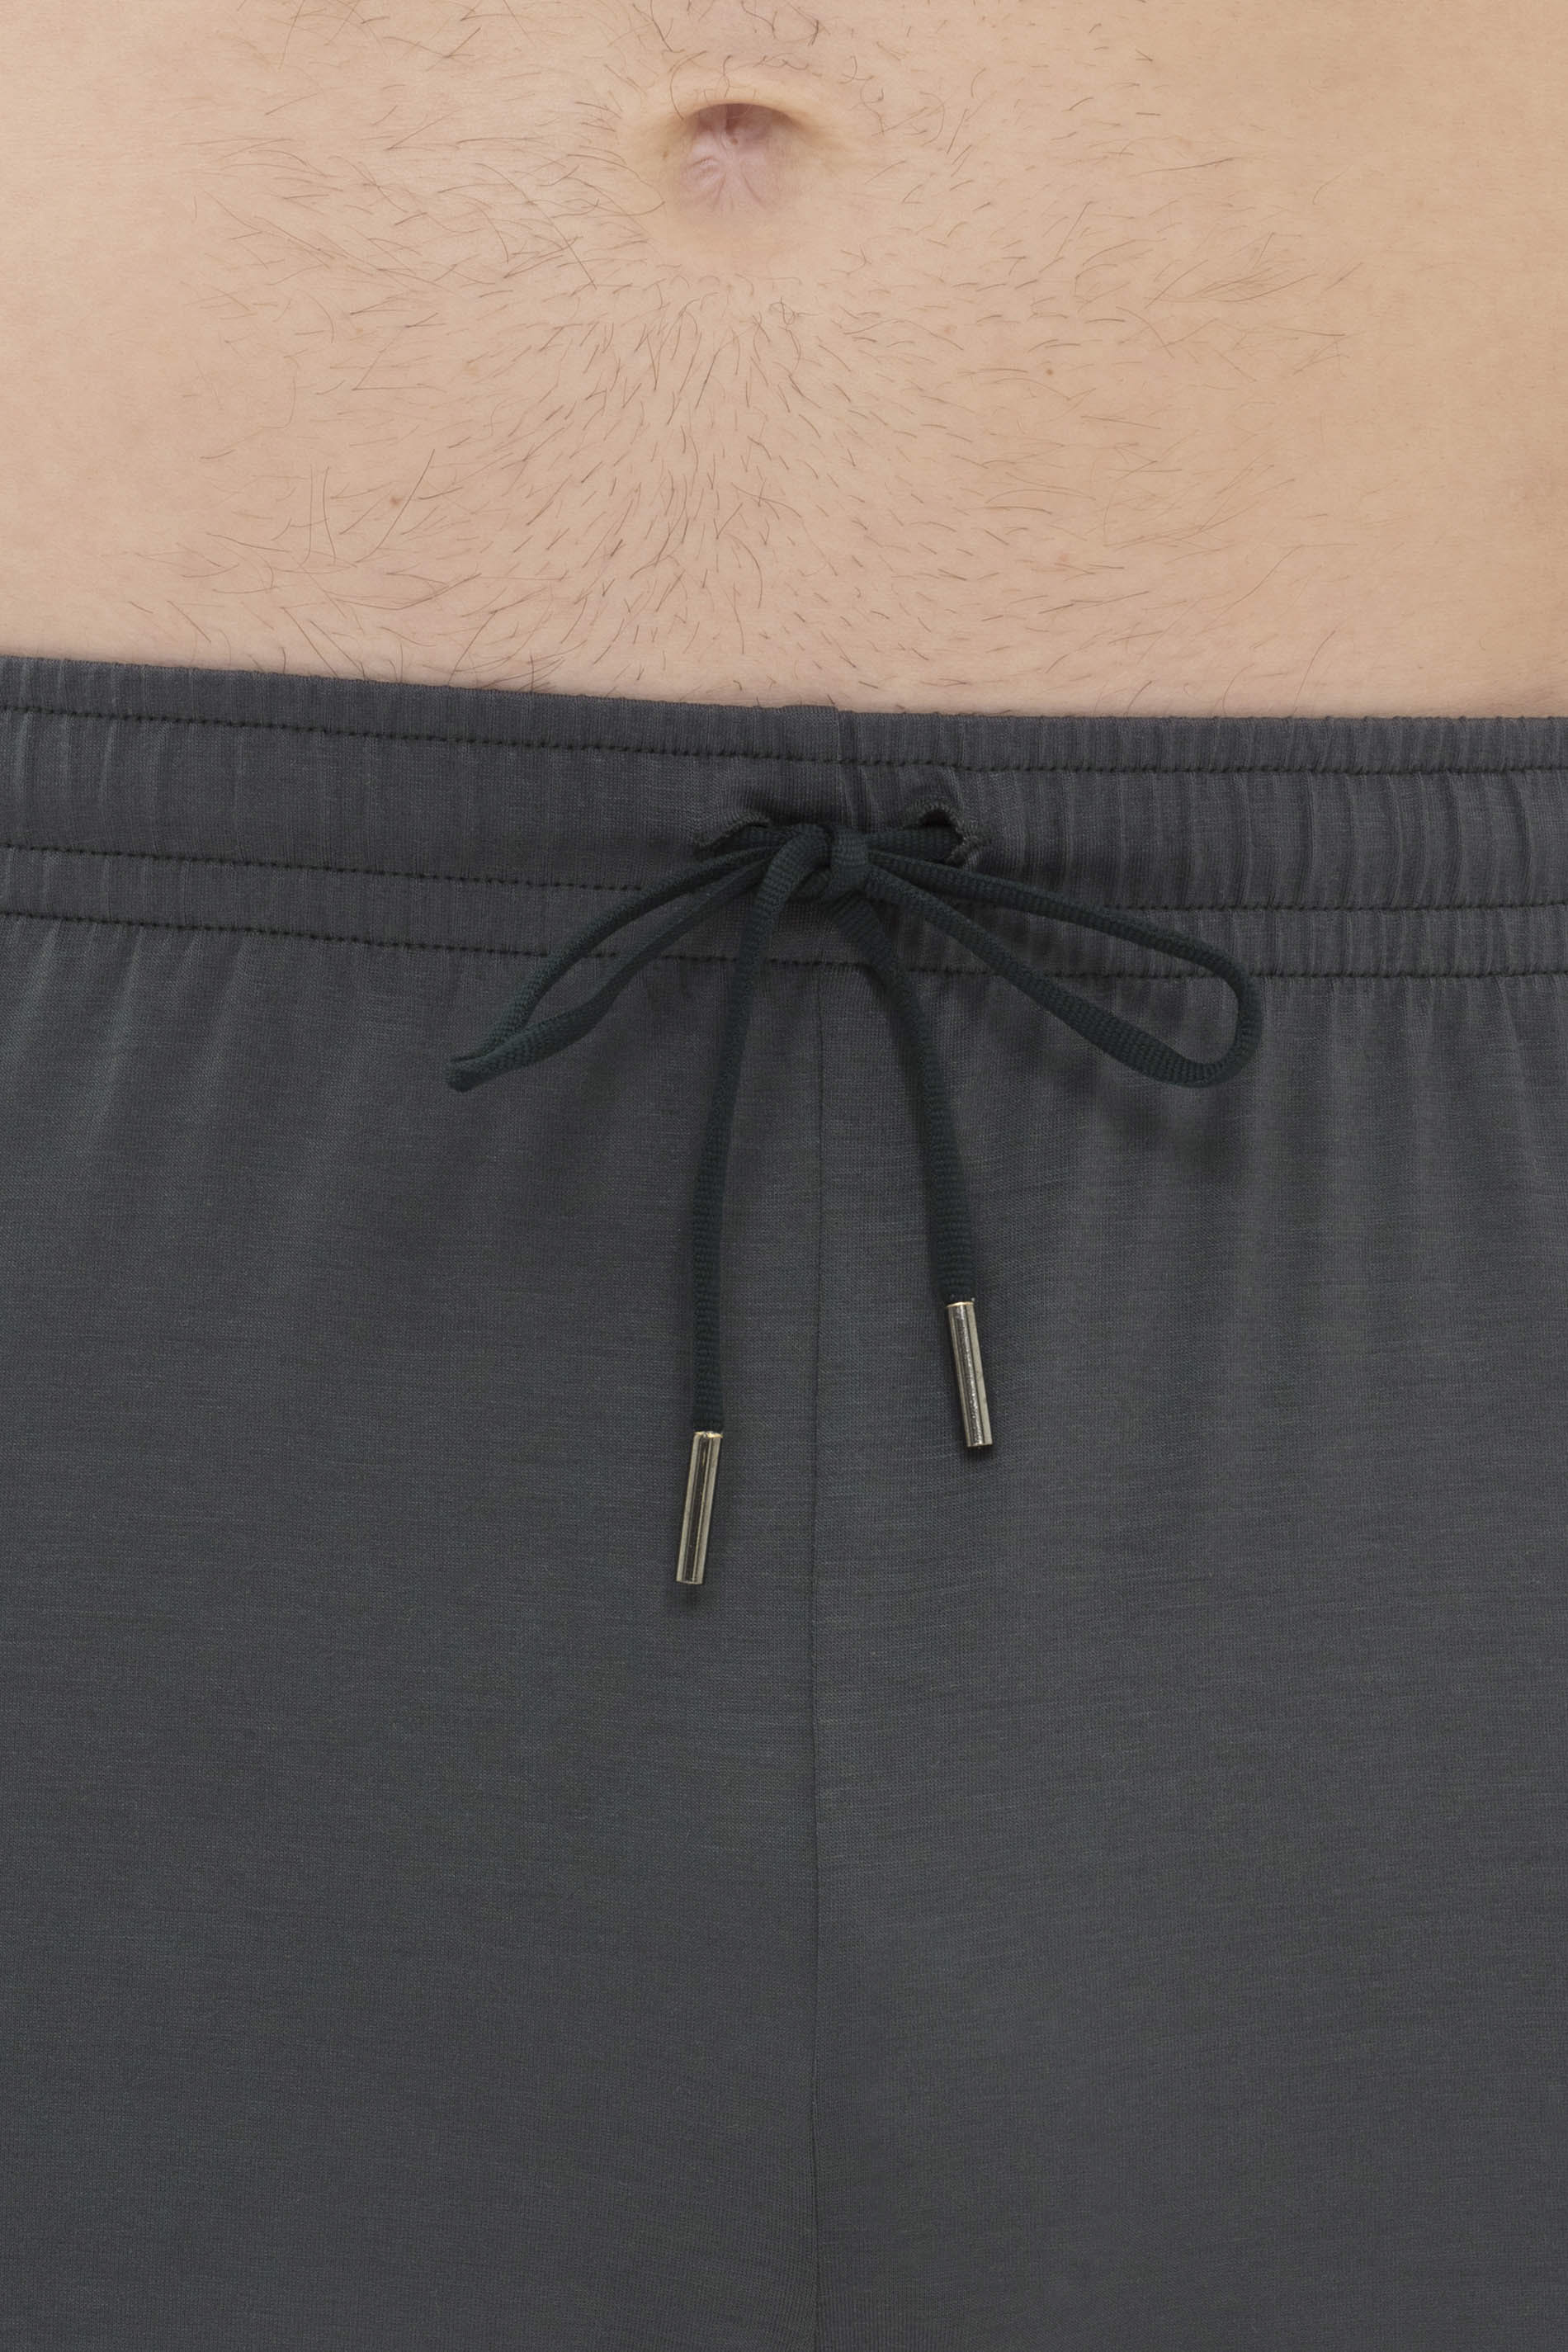 Short pants Stormy Grey Serie Jefferson Modal Detail View 01 | mey®